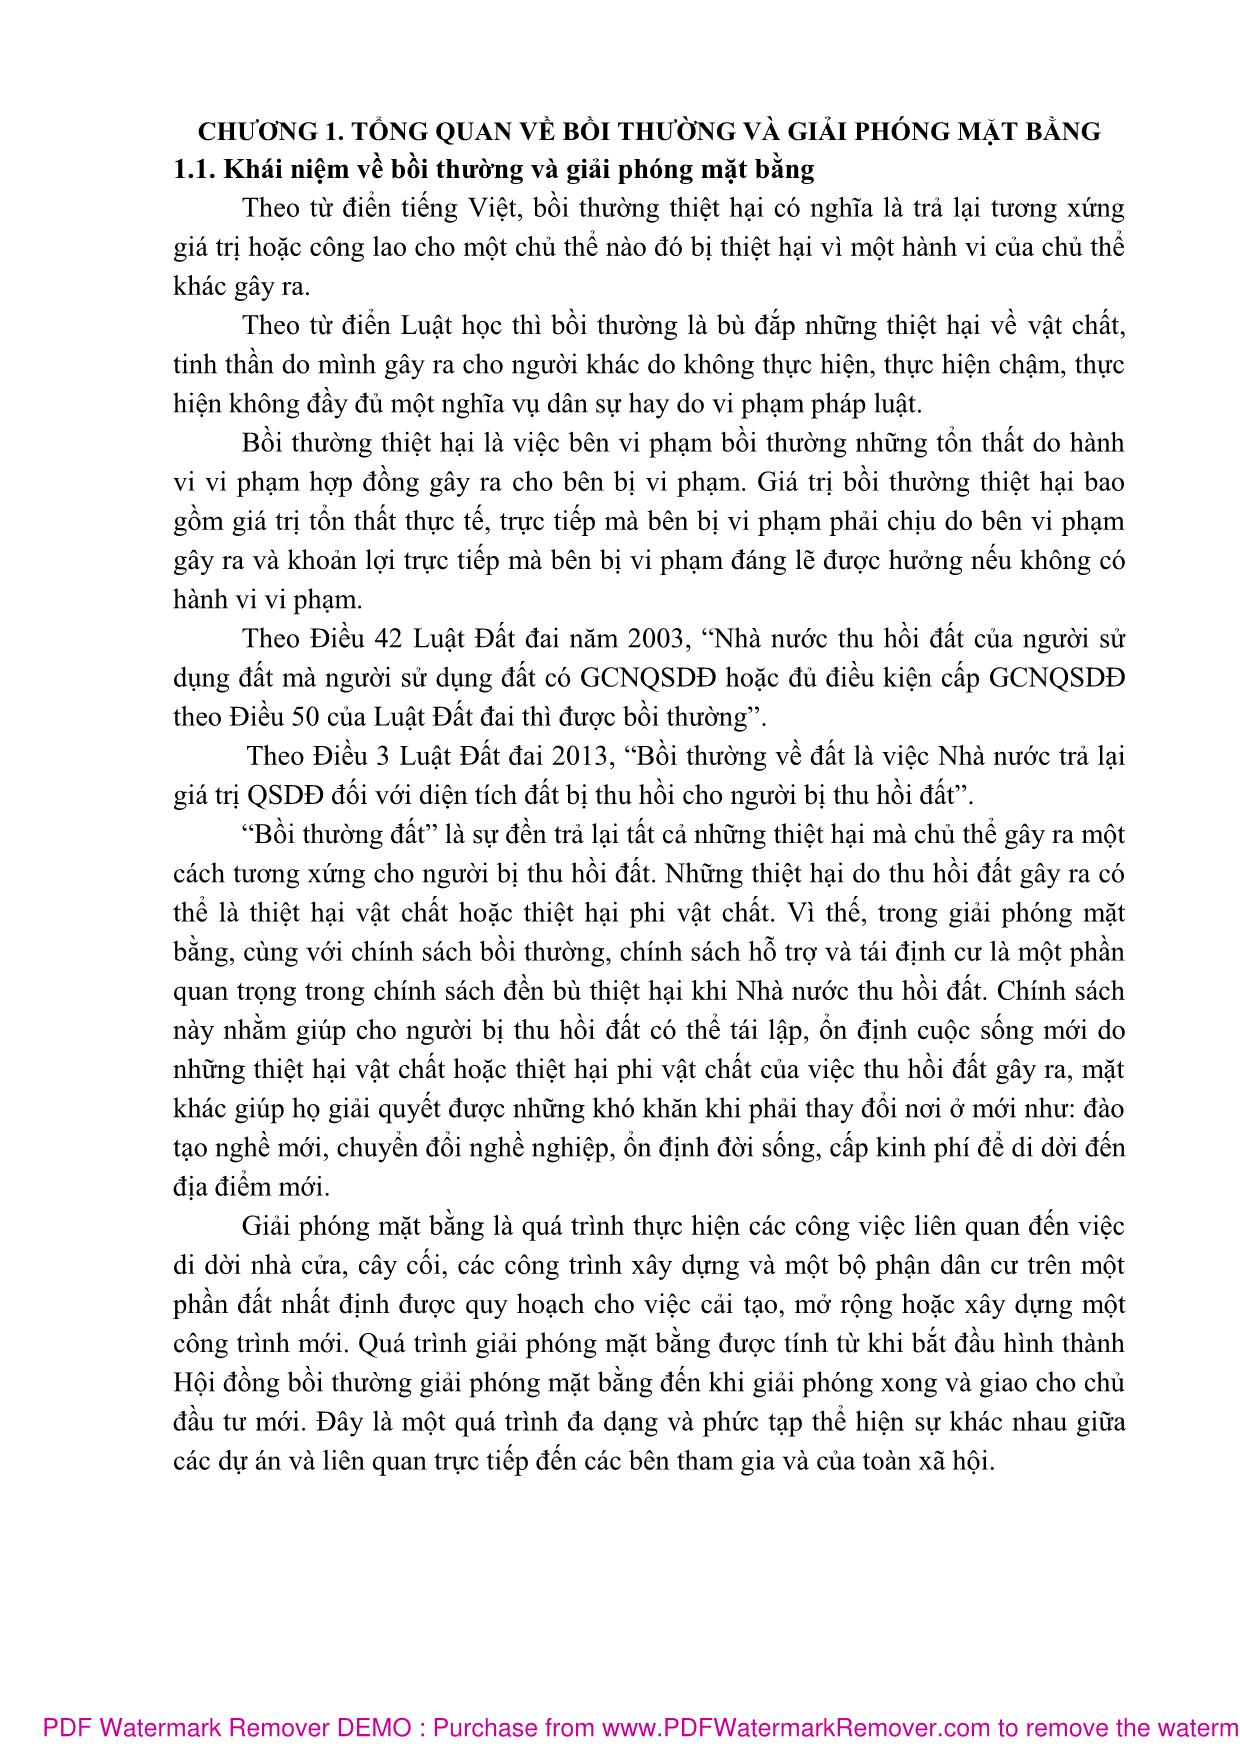 Bài giảng Bồi thường giải phóng mặt bằng (Phần 1) - Nguyễn Thị Nhật Linh trang 6